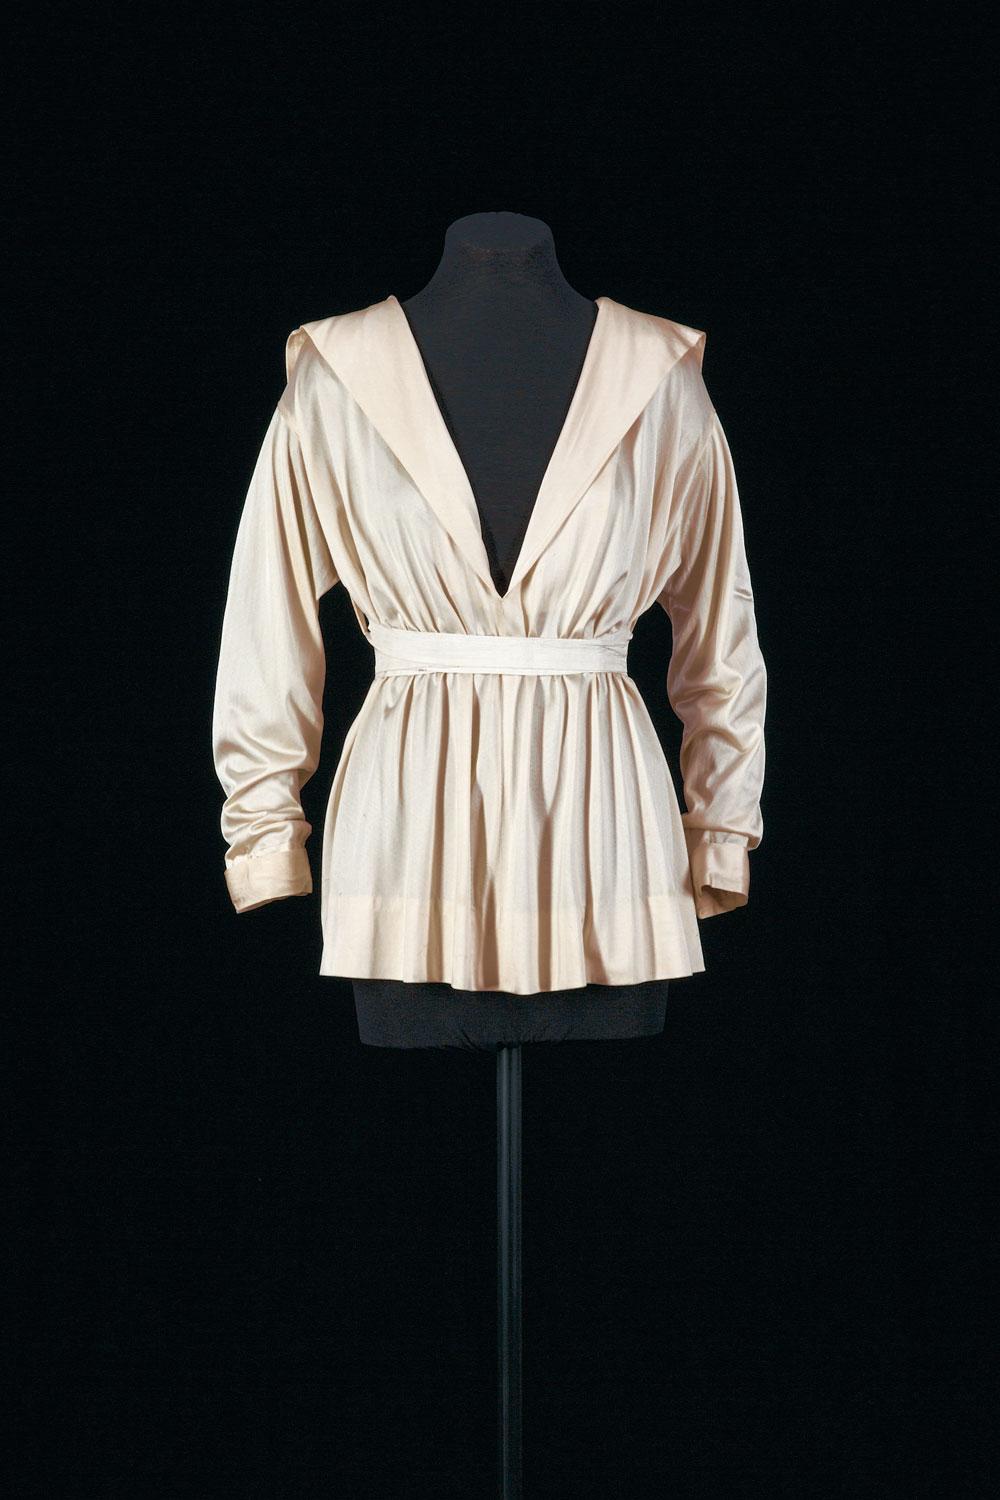 Une marinière haute couture printemps-été 1916, de la collection Patrimoine de Chanel.